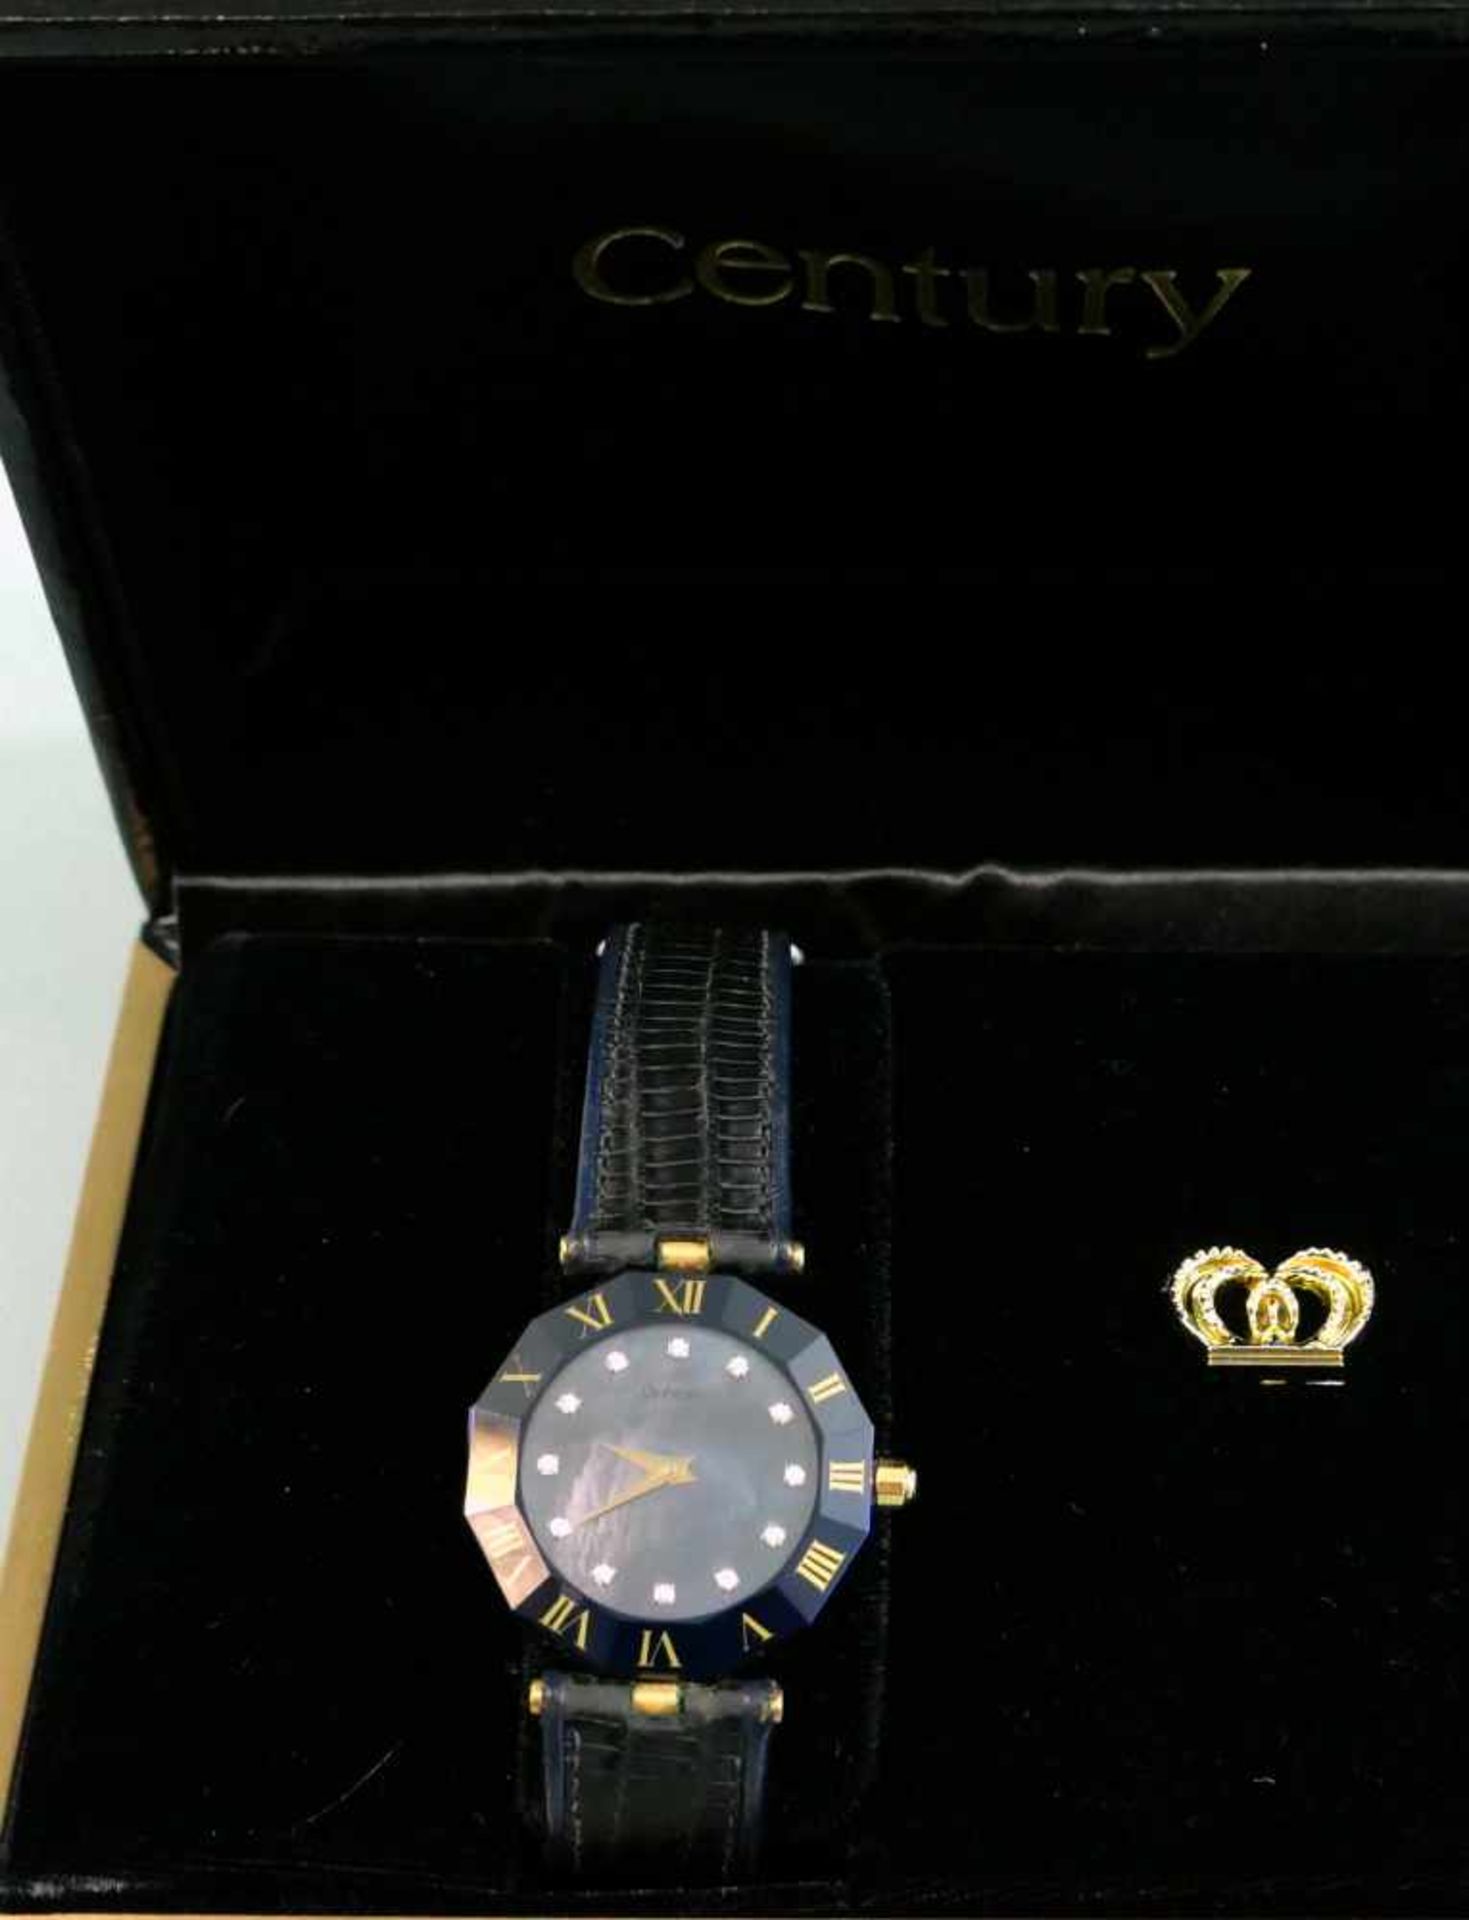 Century, Feine Damen-ArmbanduhrArmbanduhr der Marke Century in Nidau bei Biel, bekannt durch - Image 3 of 3